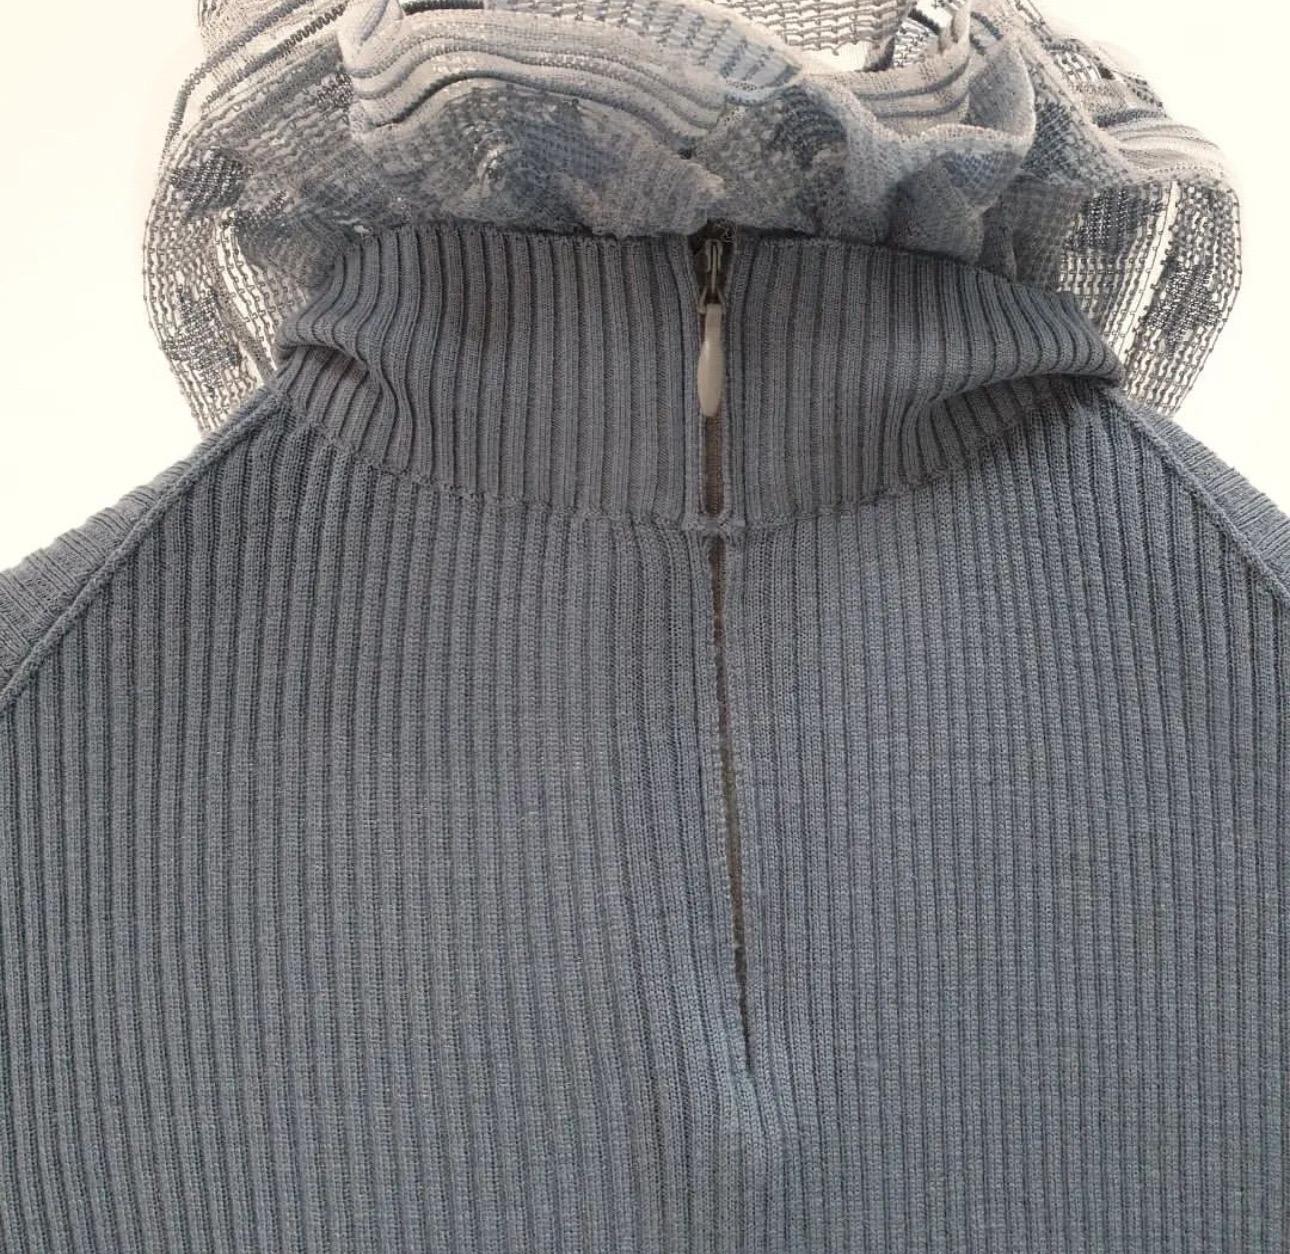 Dieser Pullover aus hochwertigen Stoffen ist kuschelig und modisch zugleich.
Größe 38
Sehr guter Zustand
Aufhänger ist nicht enthalten